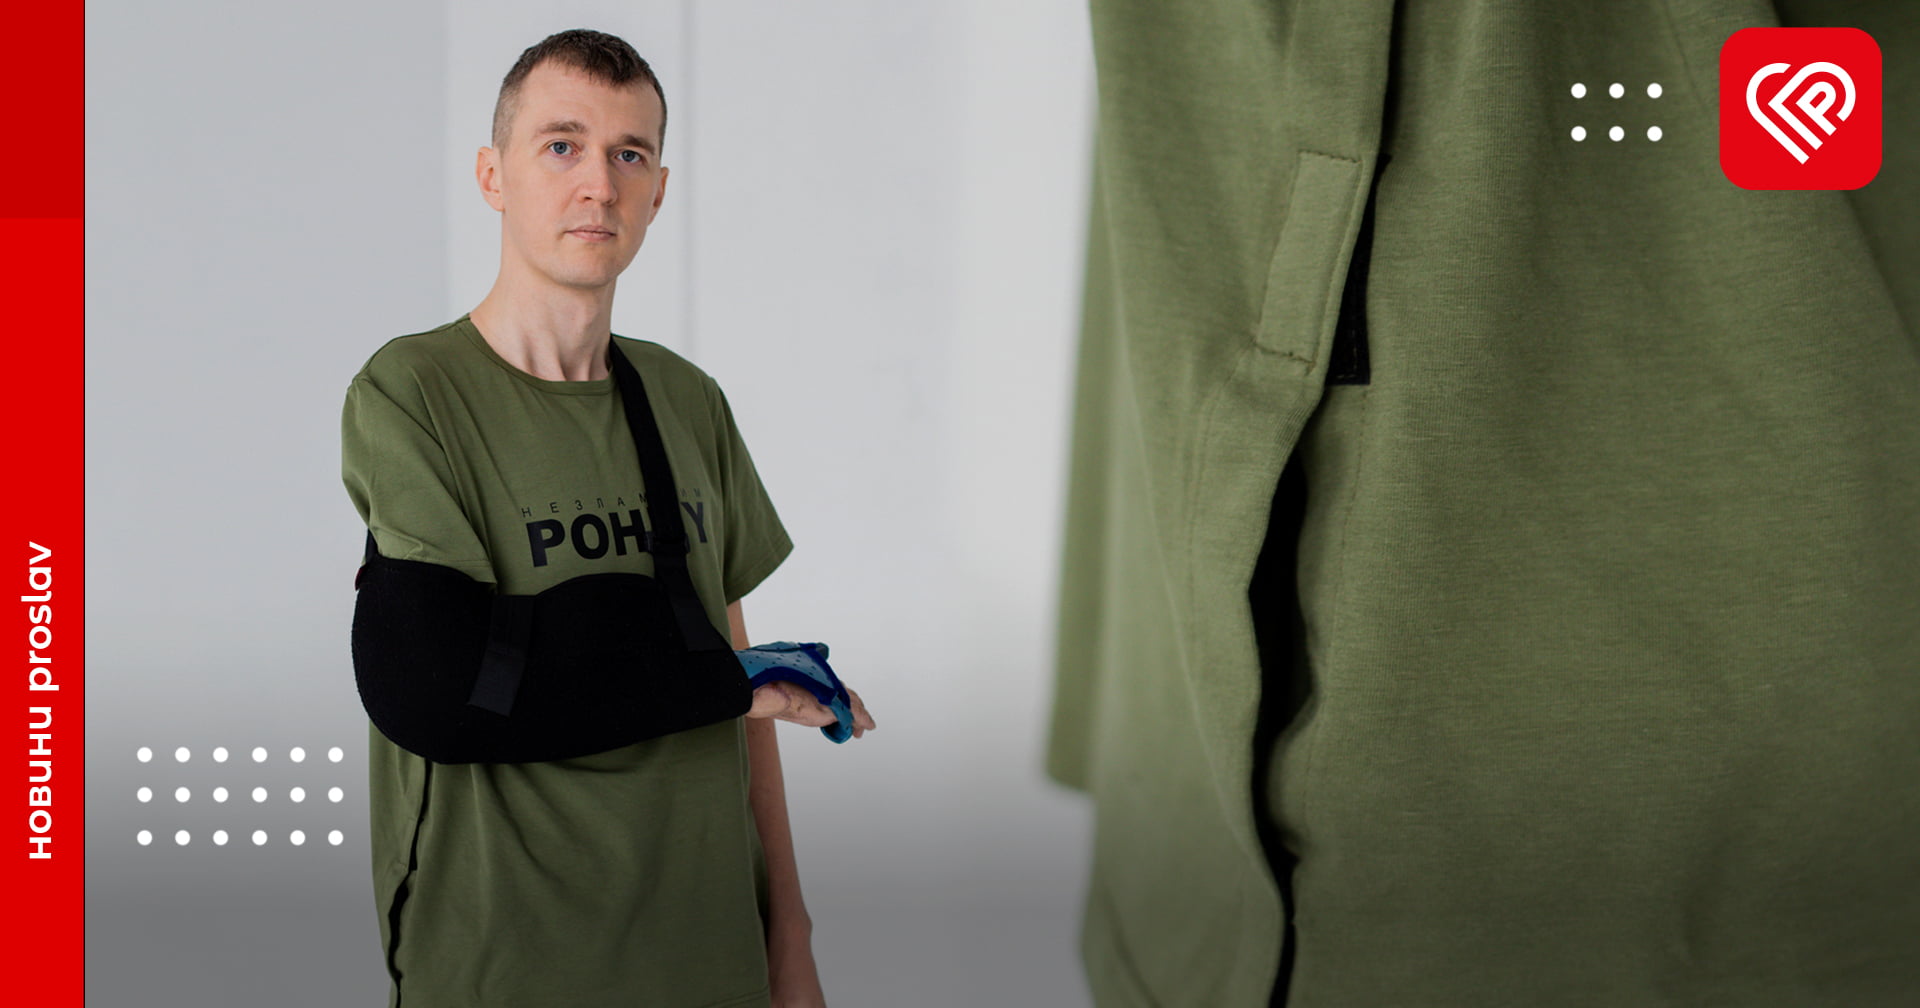 Українські дизайнери одягу розробили спеціальну лінійку спрямовану для поранених бійців. Кожен бажаючий може долучитись до допомоги